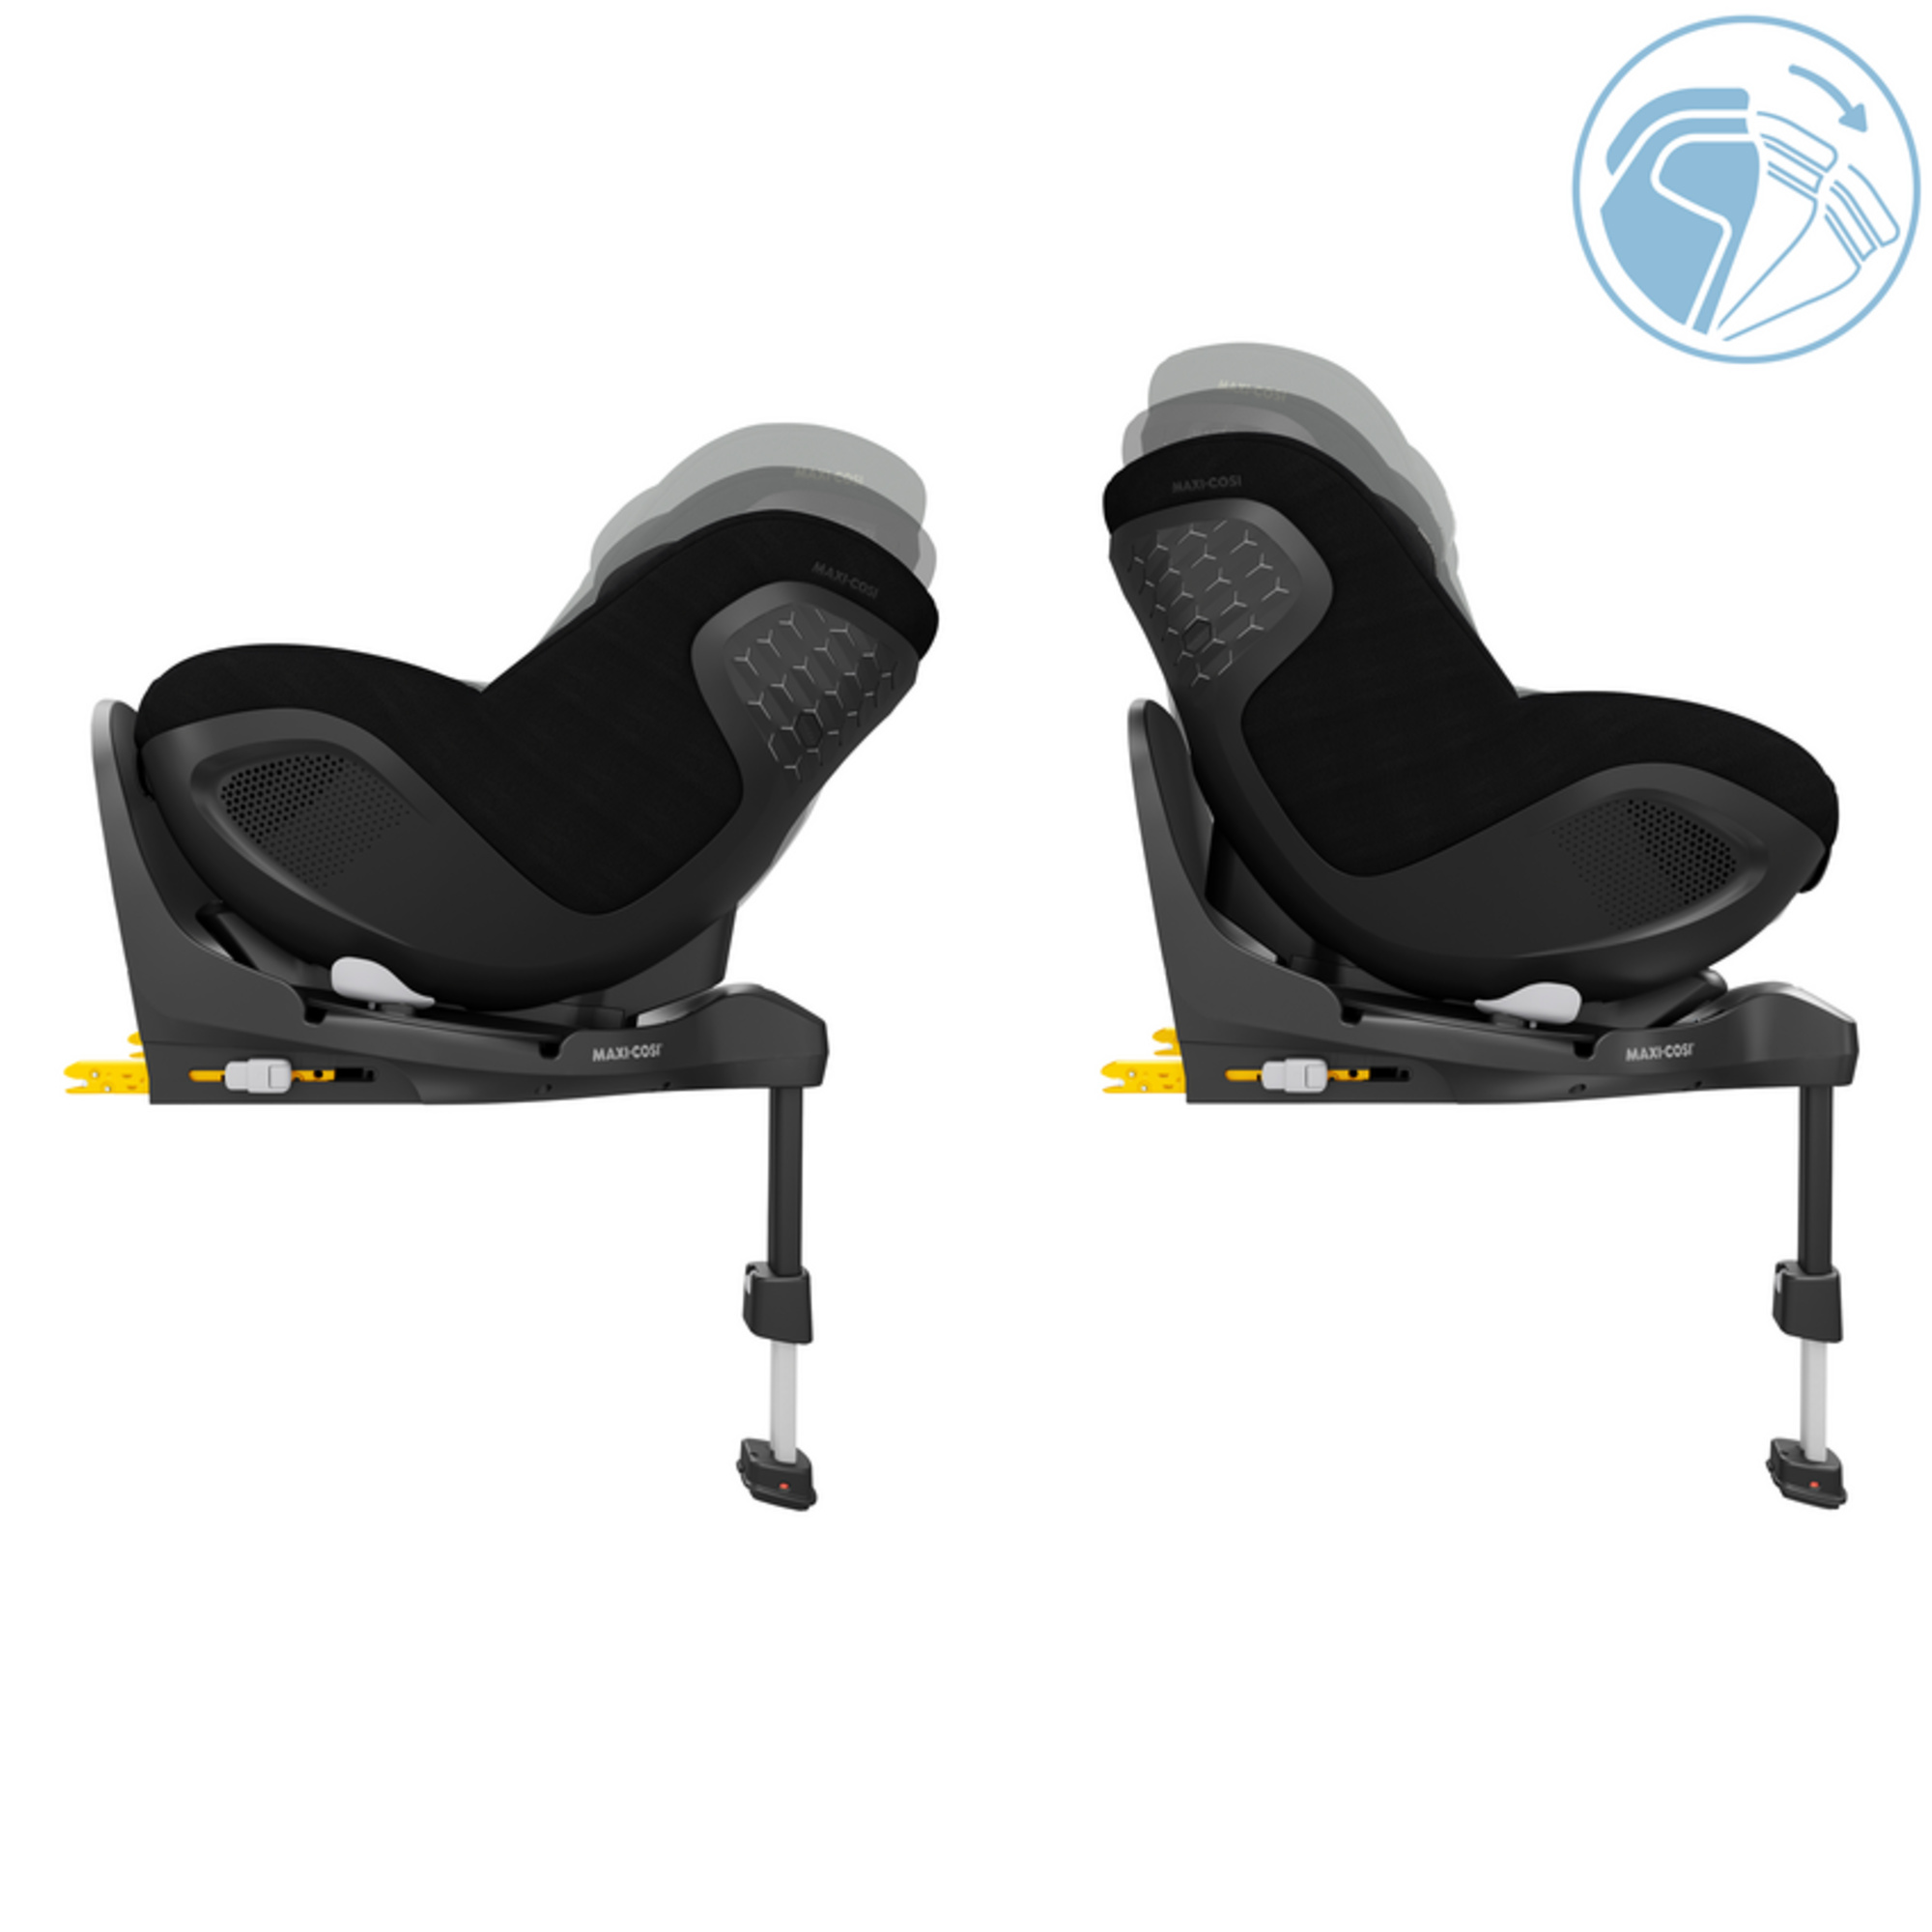 Maxi-cosi mica 360 pro  - seggiolino auto per neonato/bimbo piccolo - nascita 4 anni - MAXI COSI